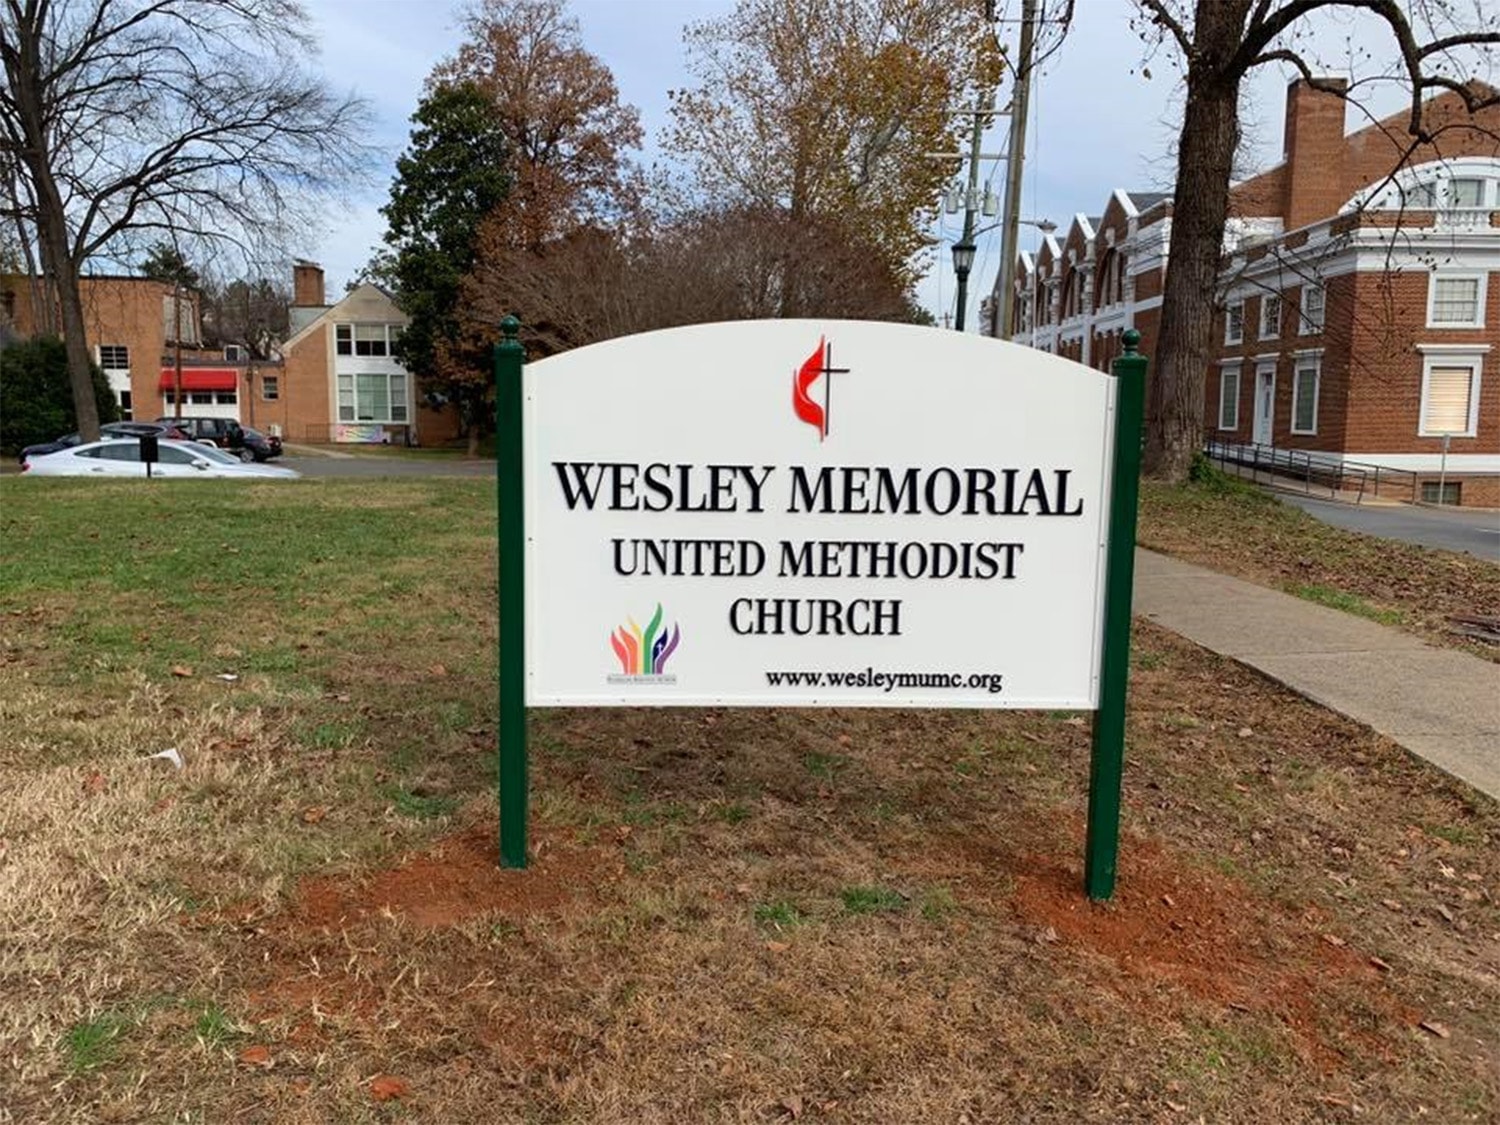 Iglesia Metodista Unida Wesley Memorial en Charlottesville, Virginia. Foto: Cortesía de la Iglesia Metodista Unida Wesley Memorial.